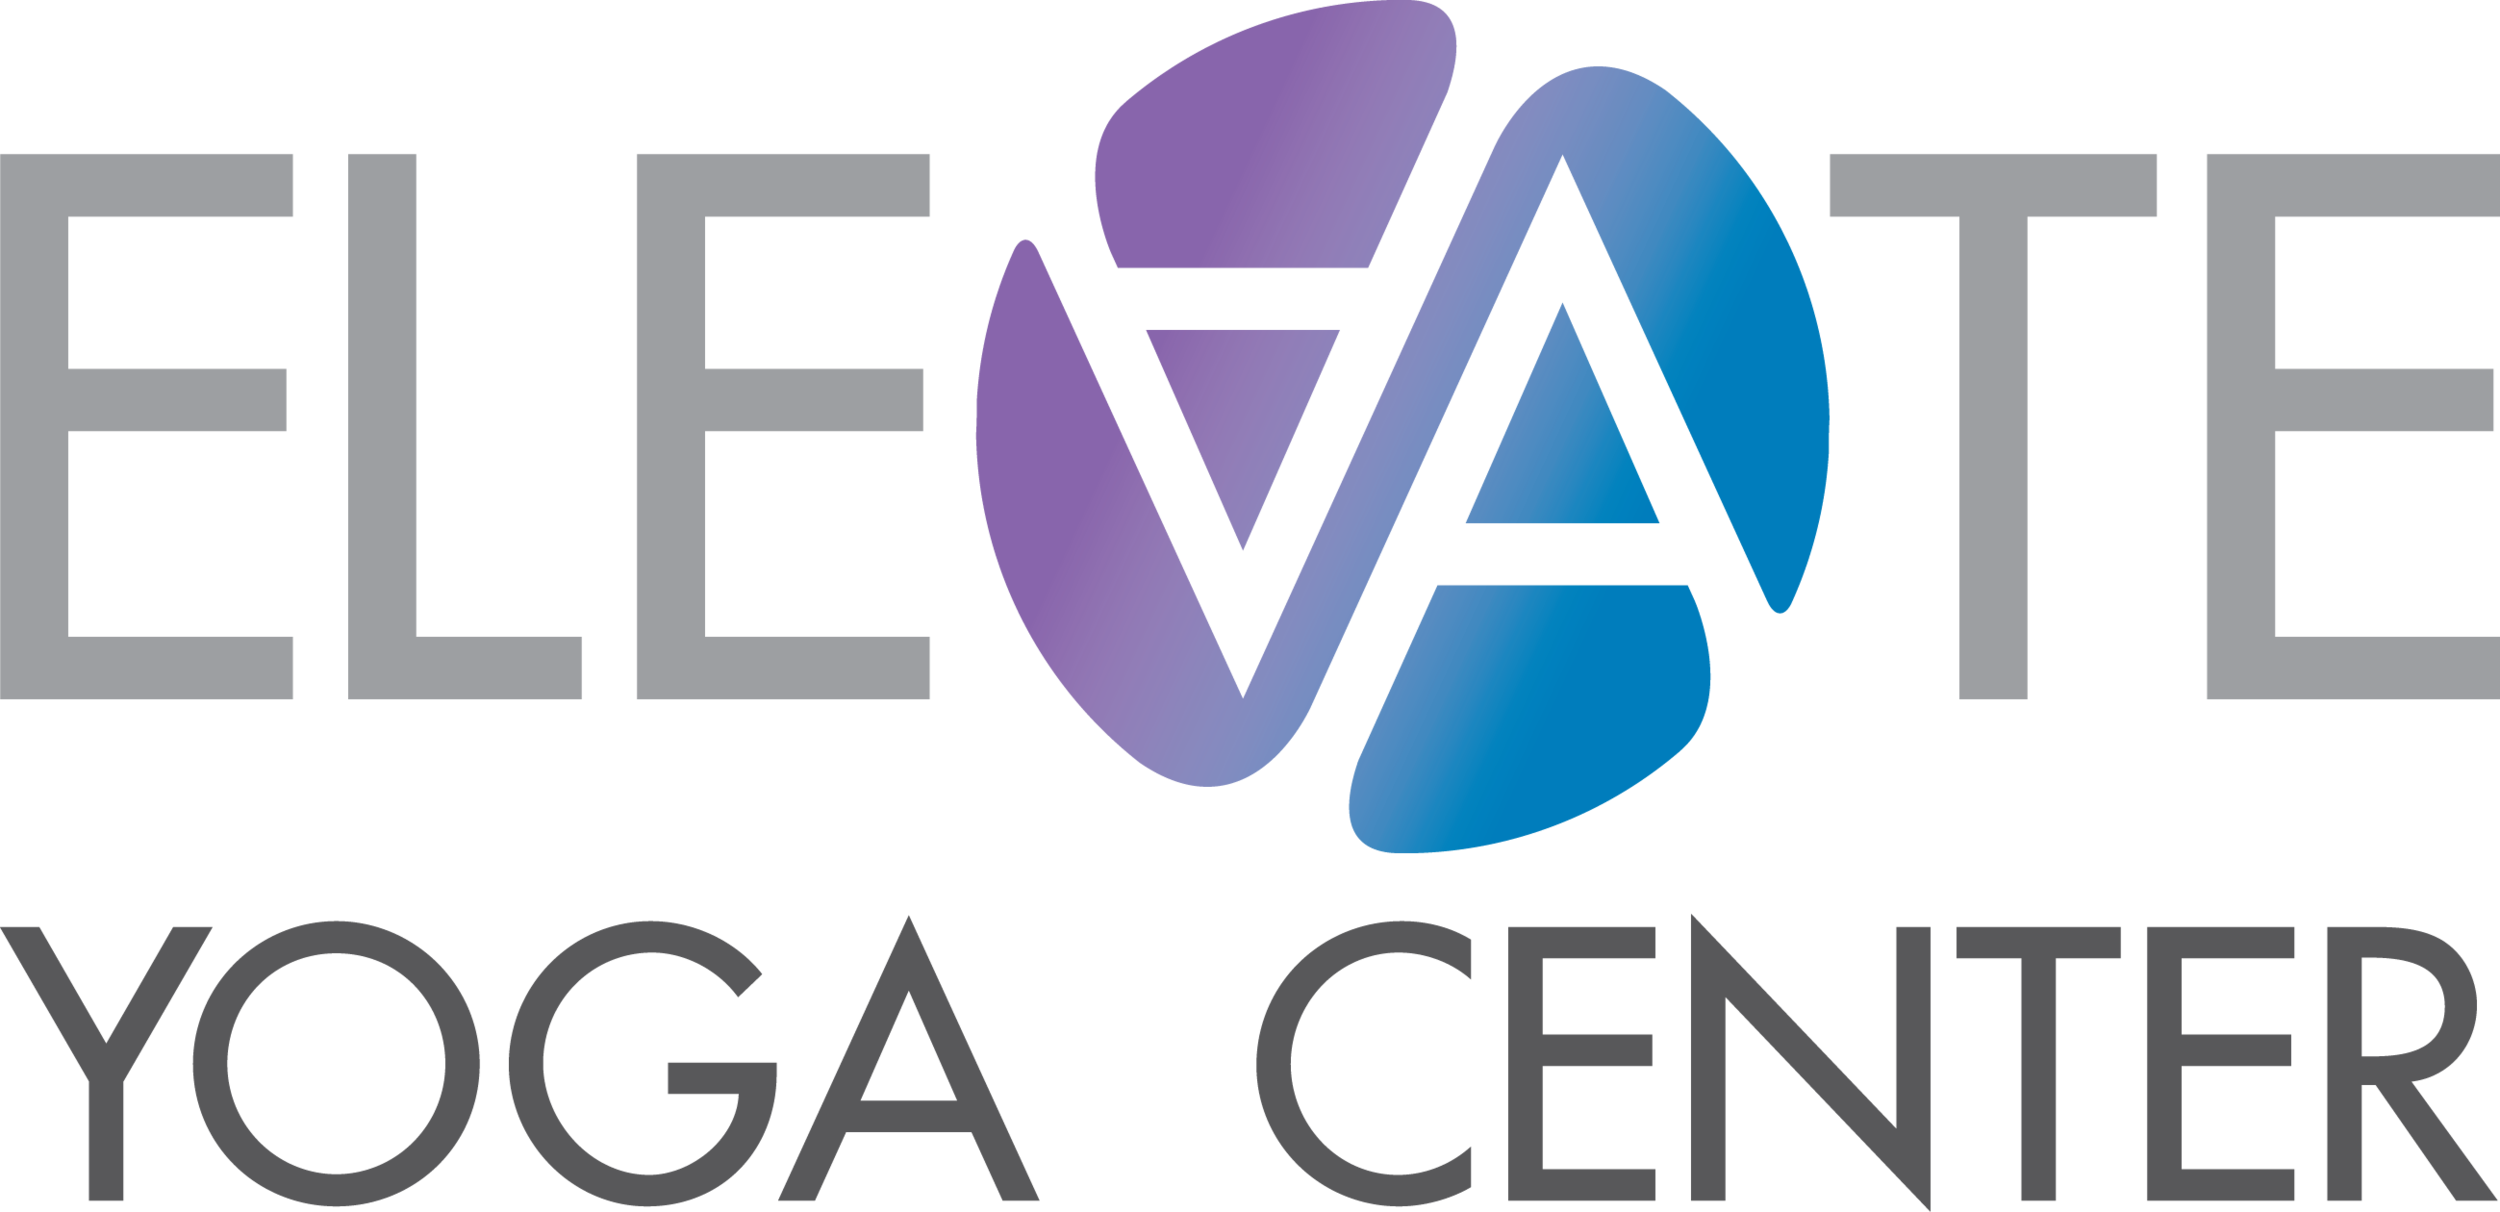 Elevate Yoga Center